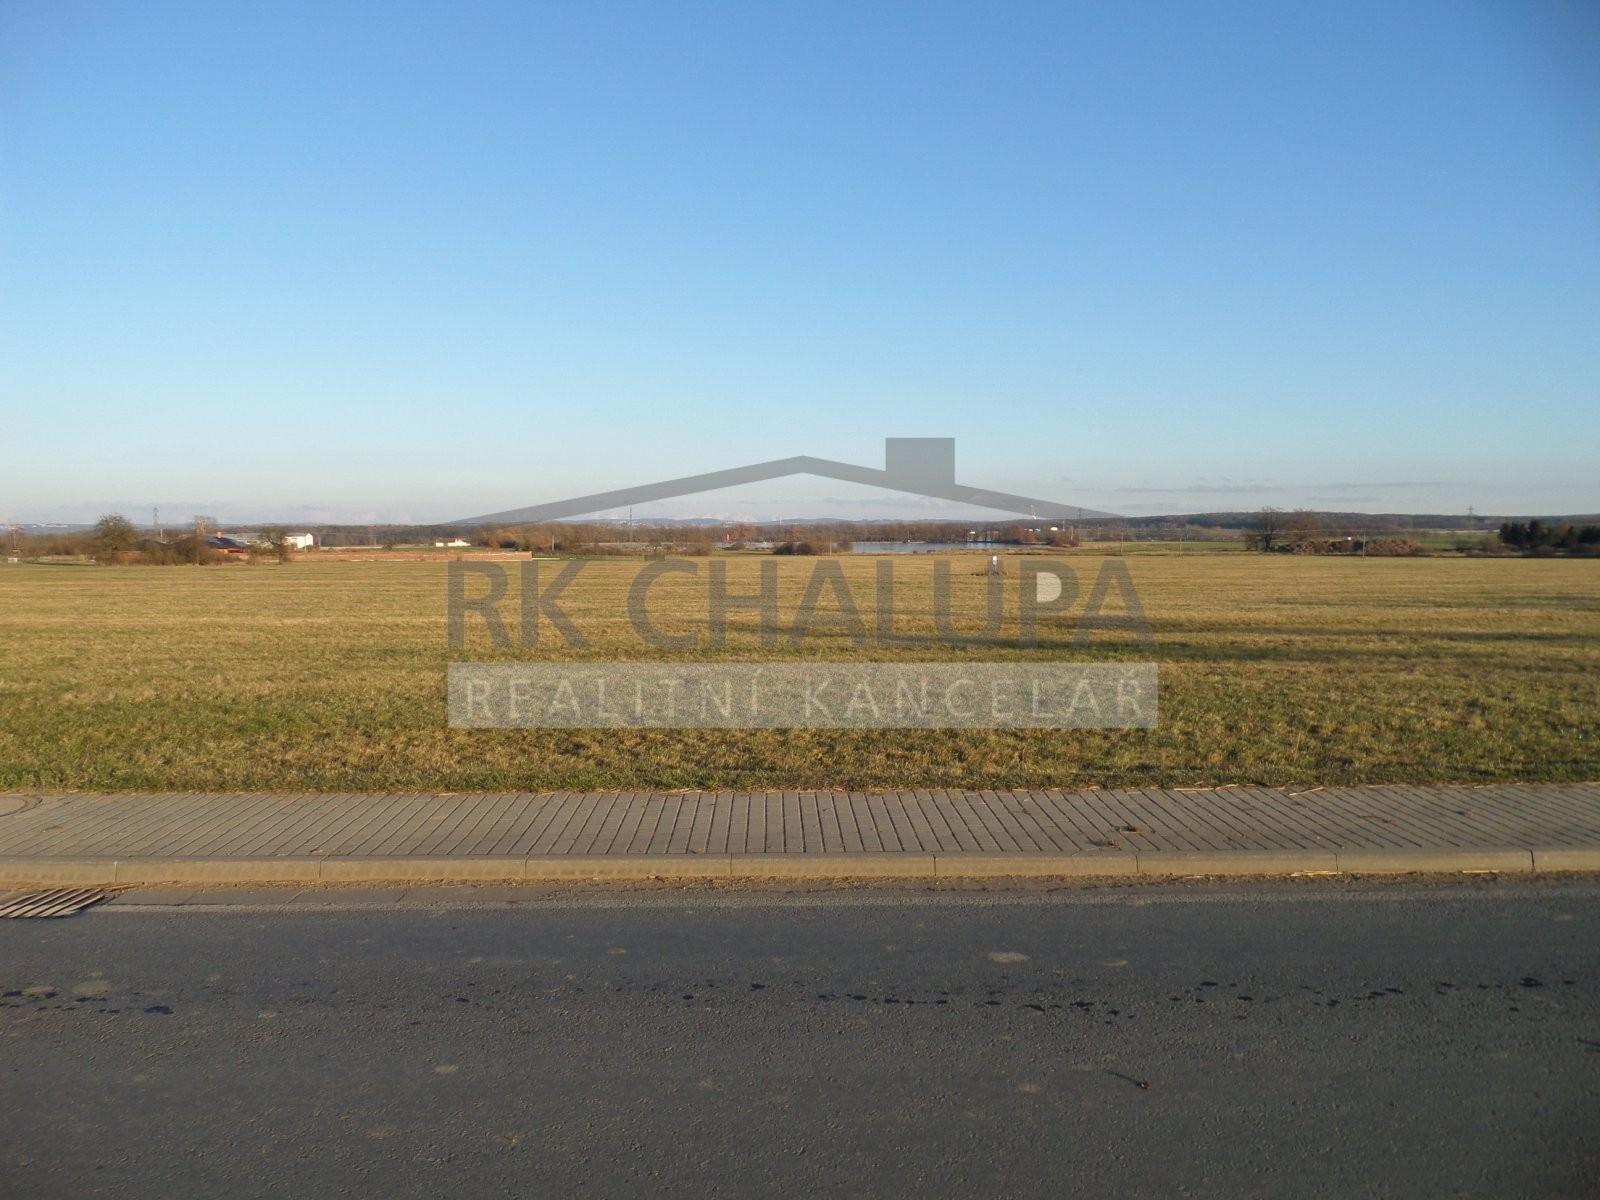 Prodej pozemku v Křenovicích u Dubného, celkem 14.406 m2, u zastavitelného území, investice